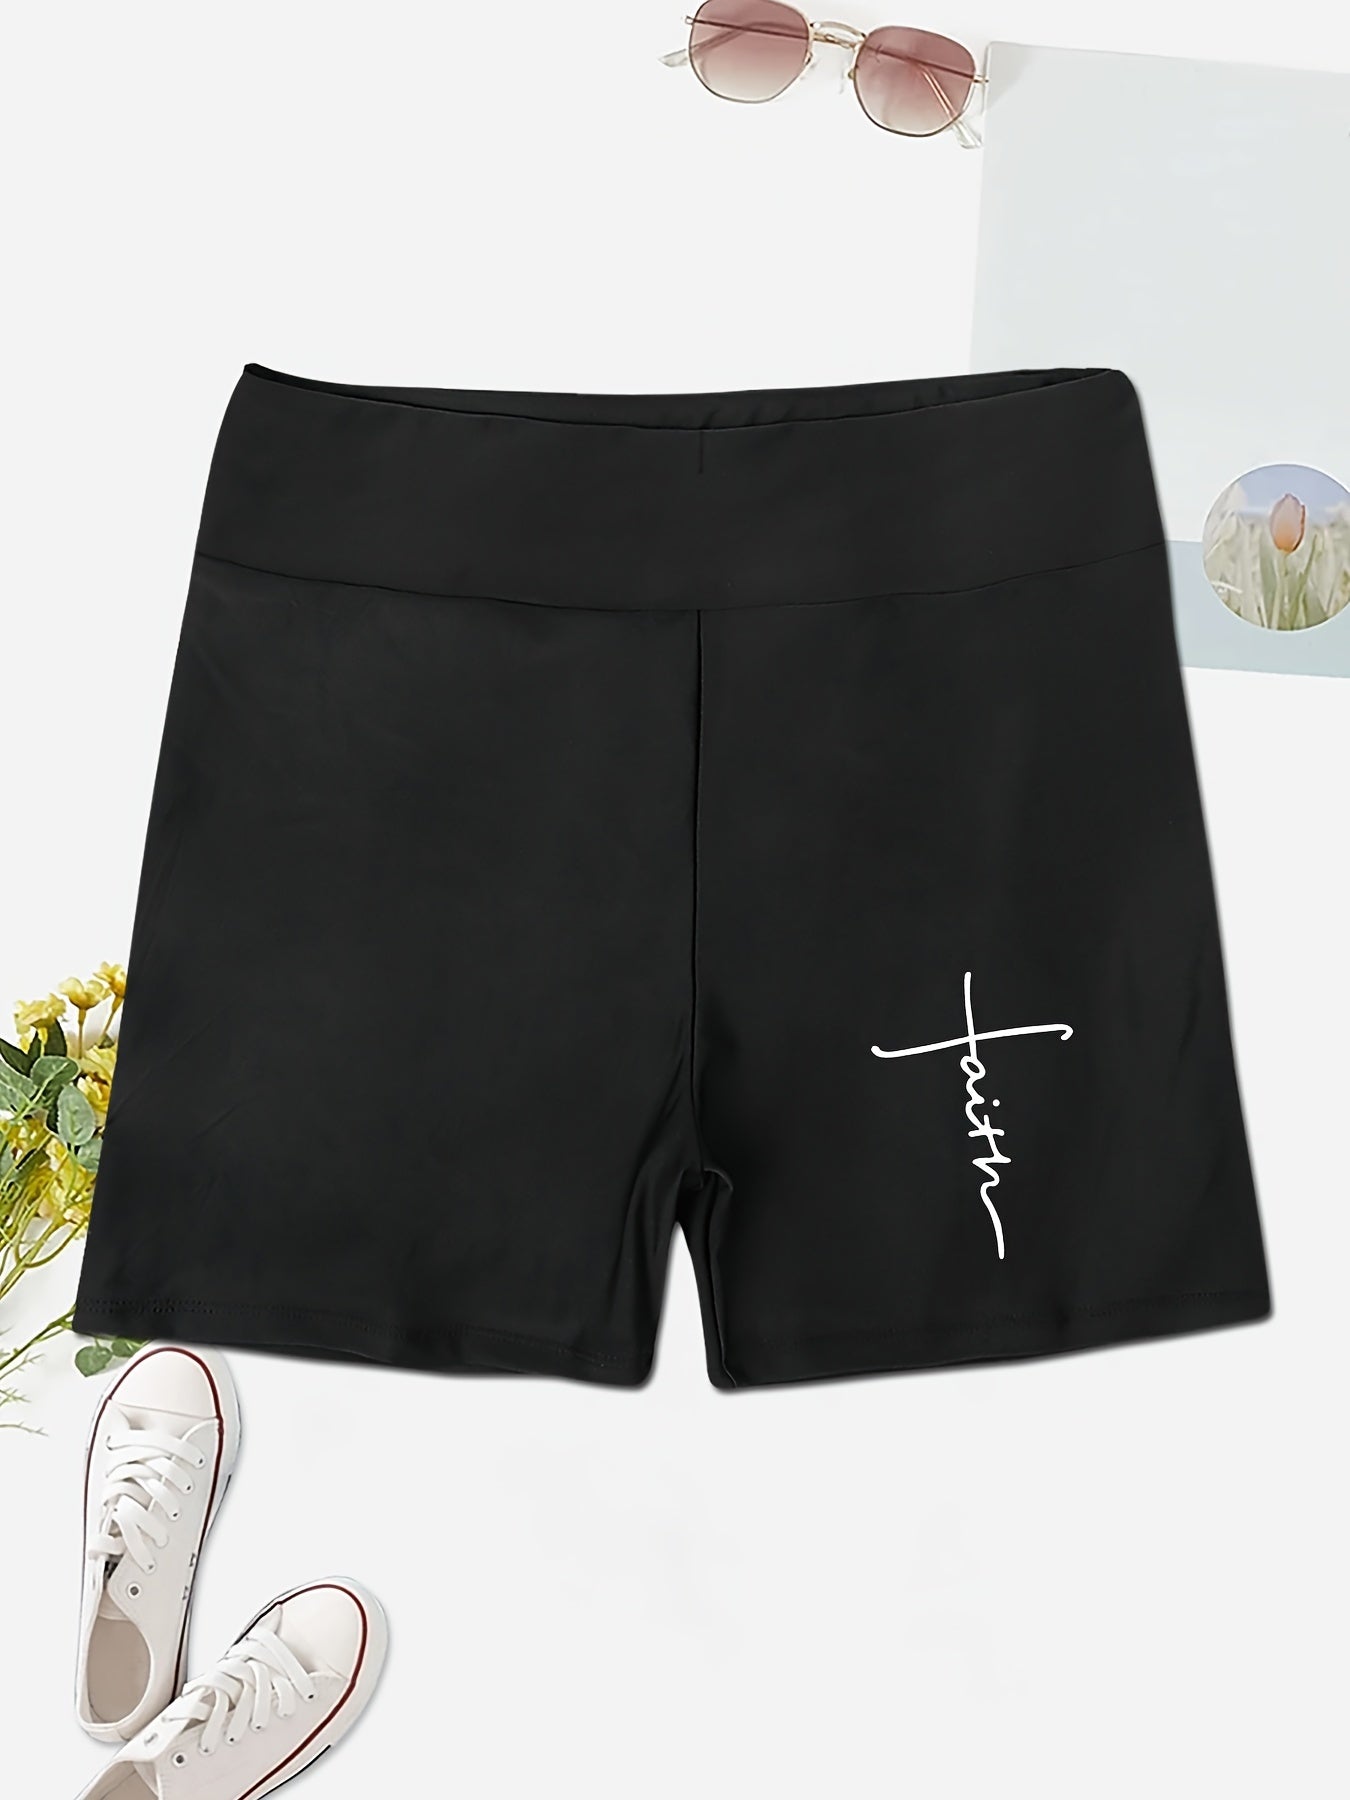 Faith High Waist Women's Christian Shorts claimedbygoddesigns